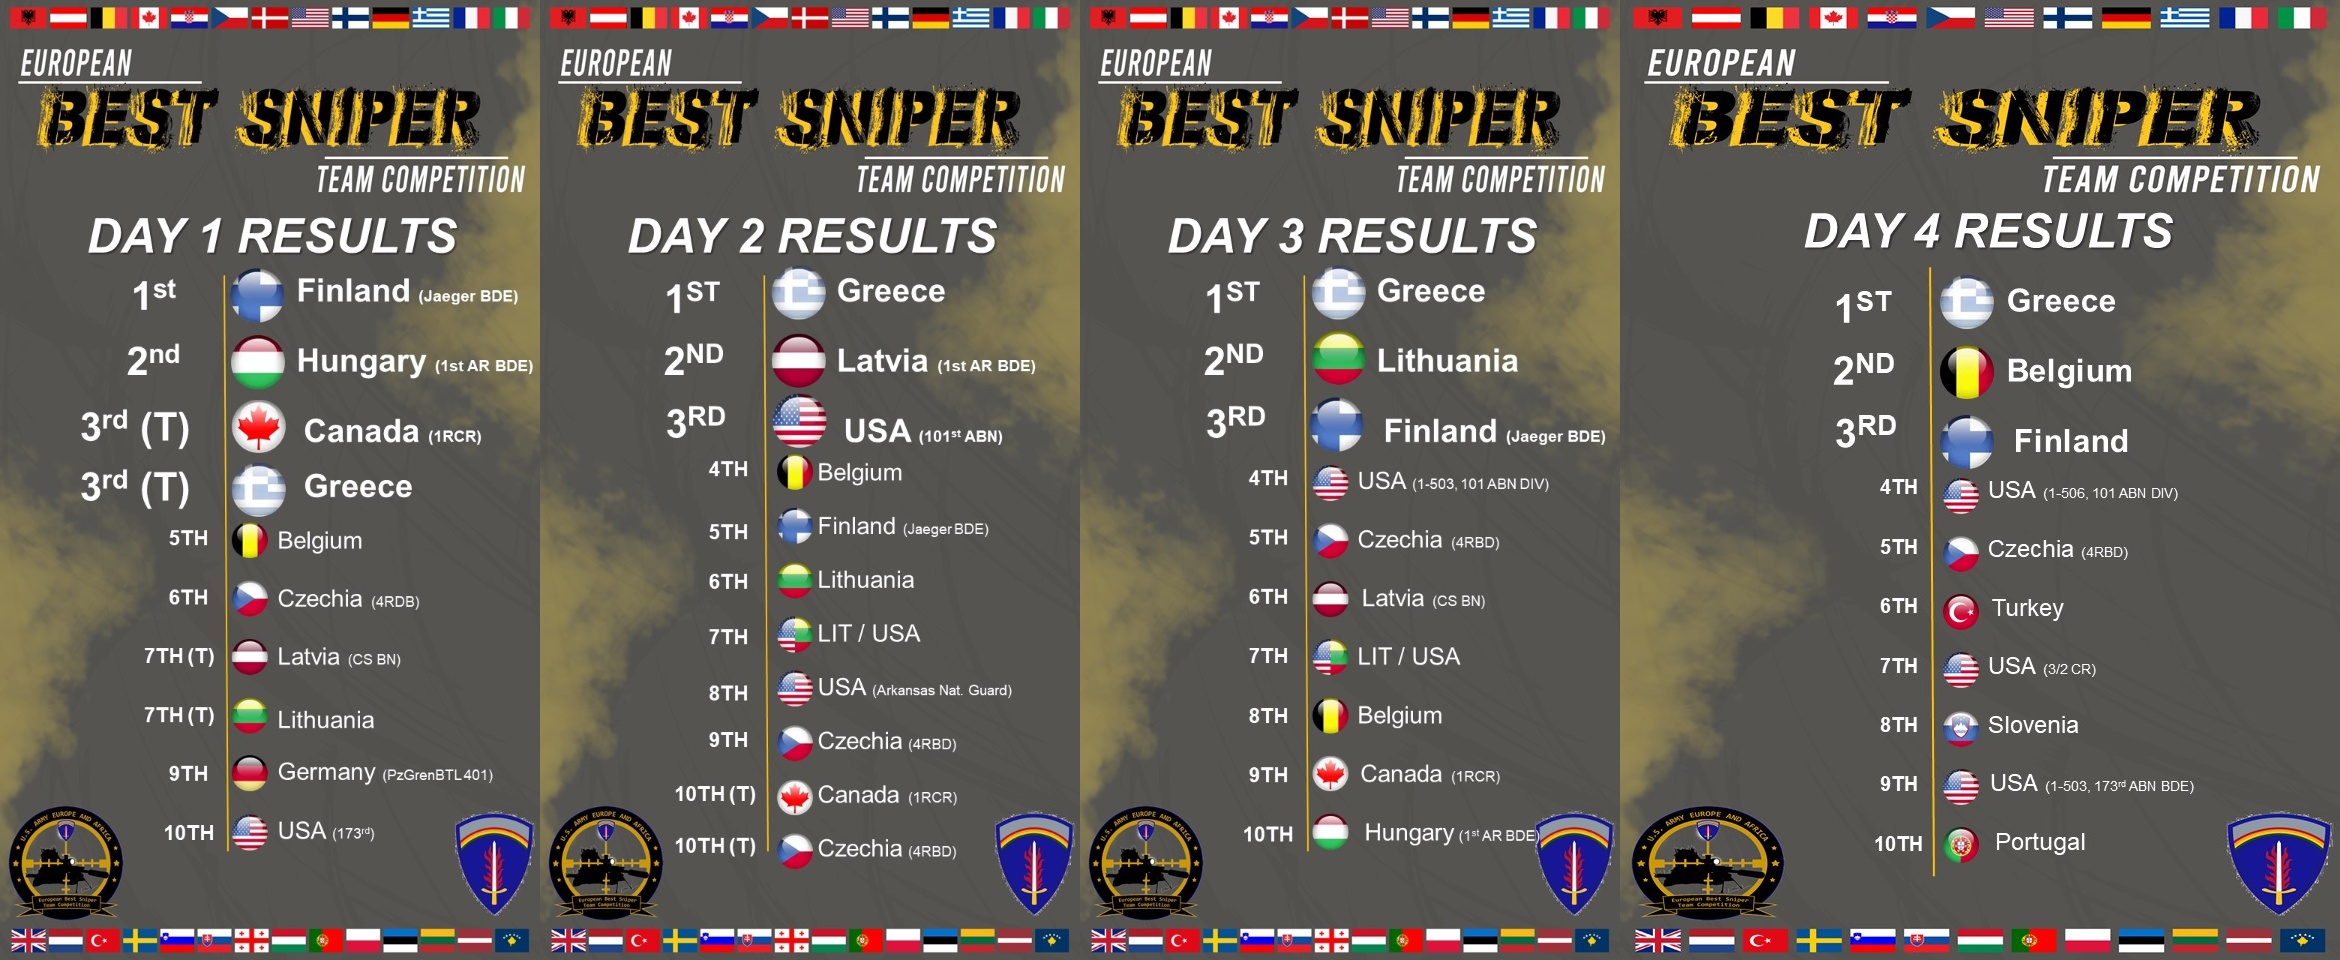 DVIDS - News - Greece Wins European Best Sniper Team Competition